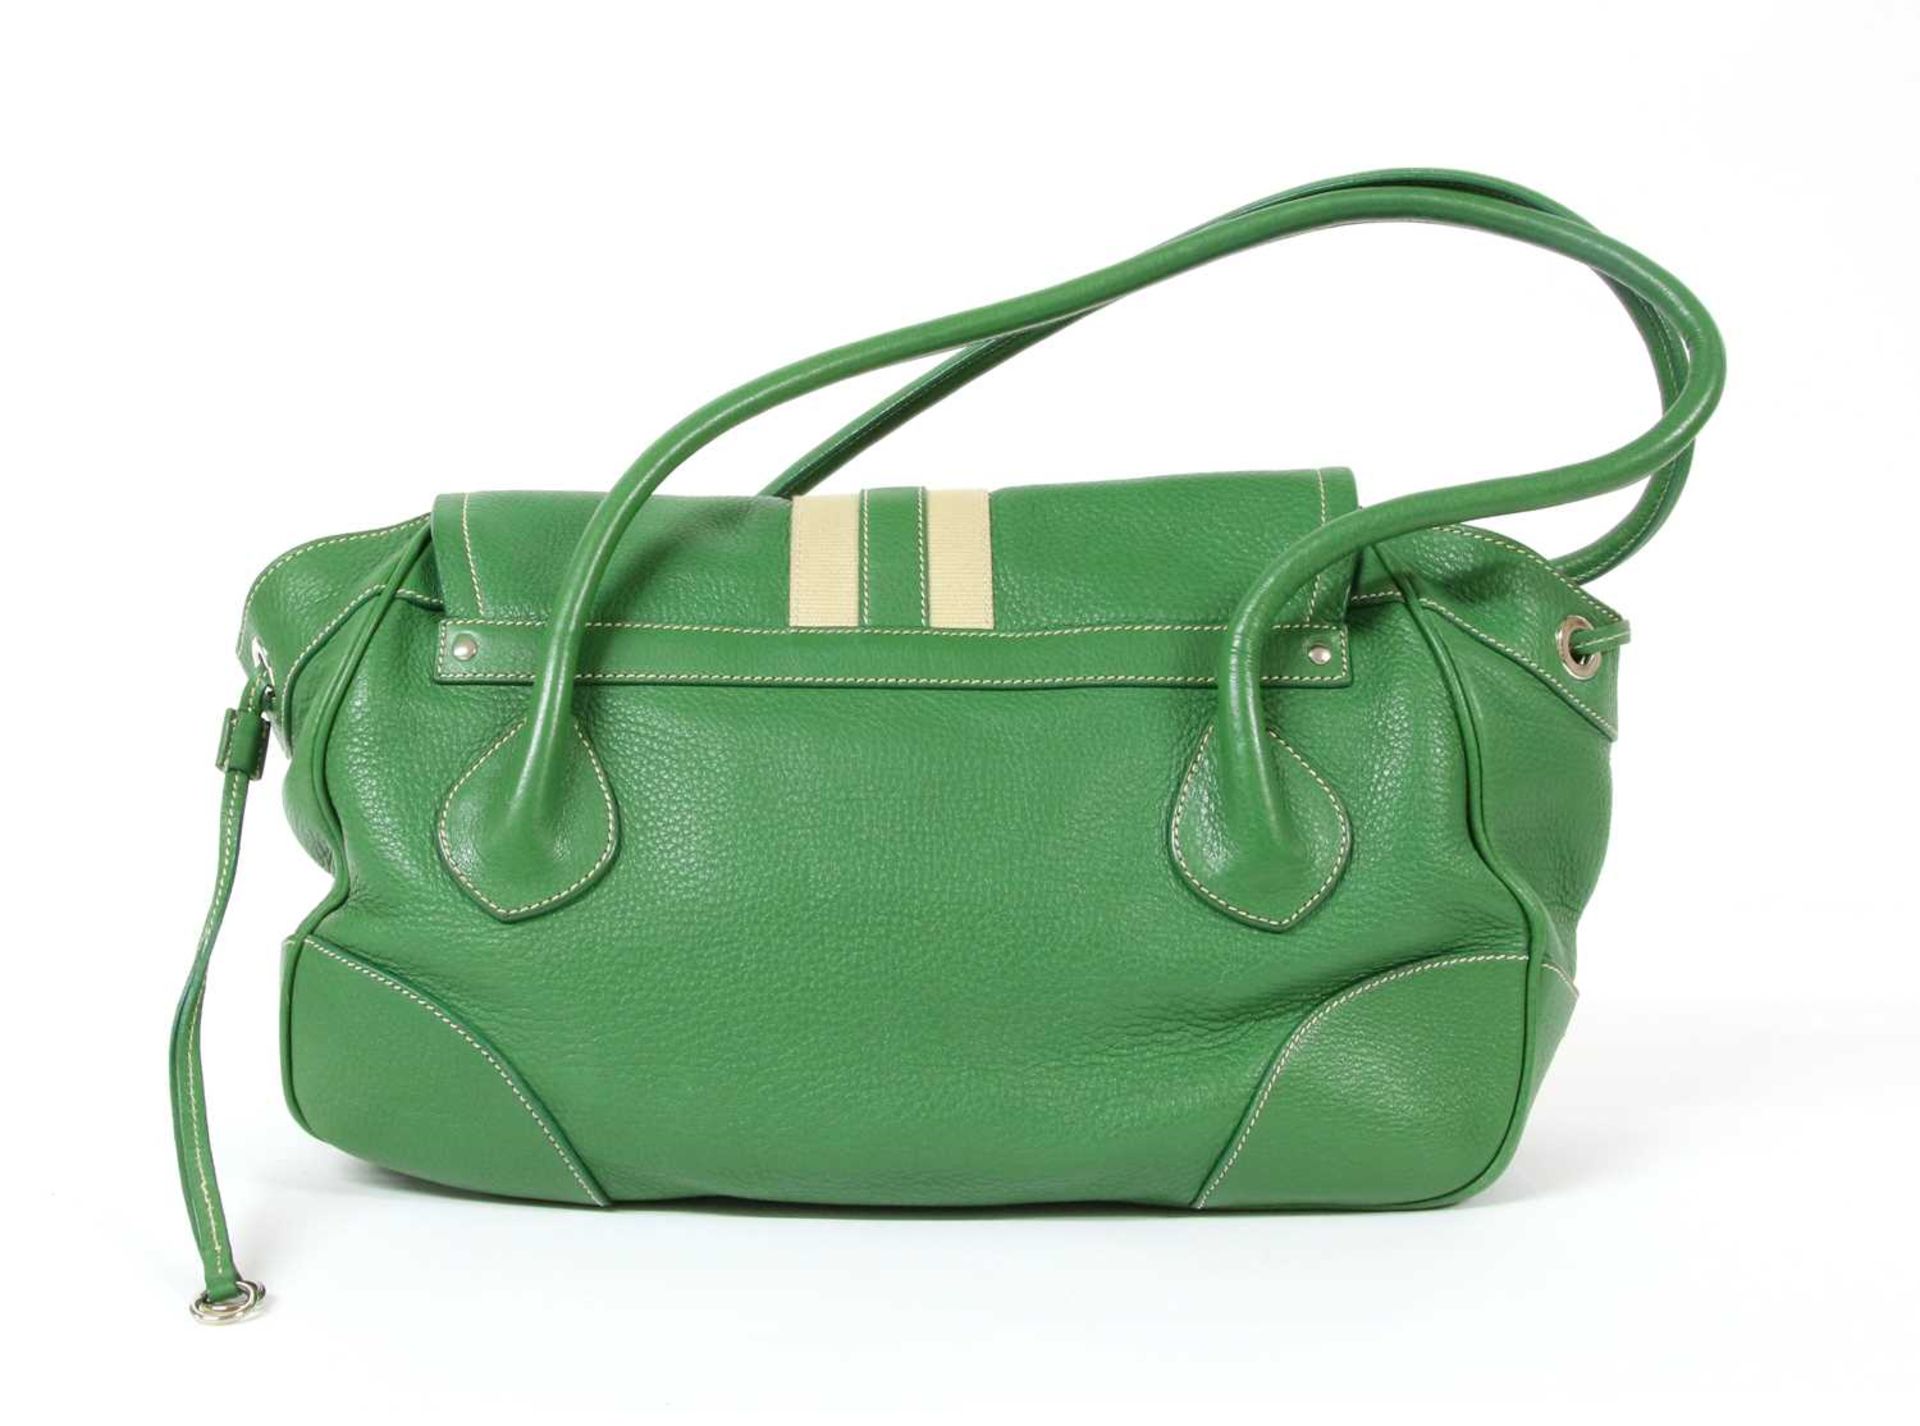 A Prada green leather shoulder bag, - Image 2 of 11